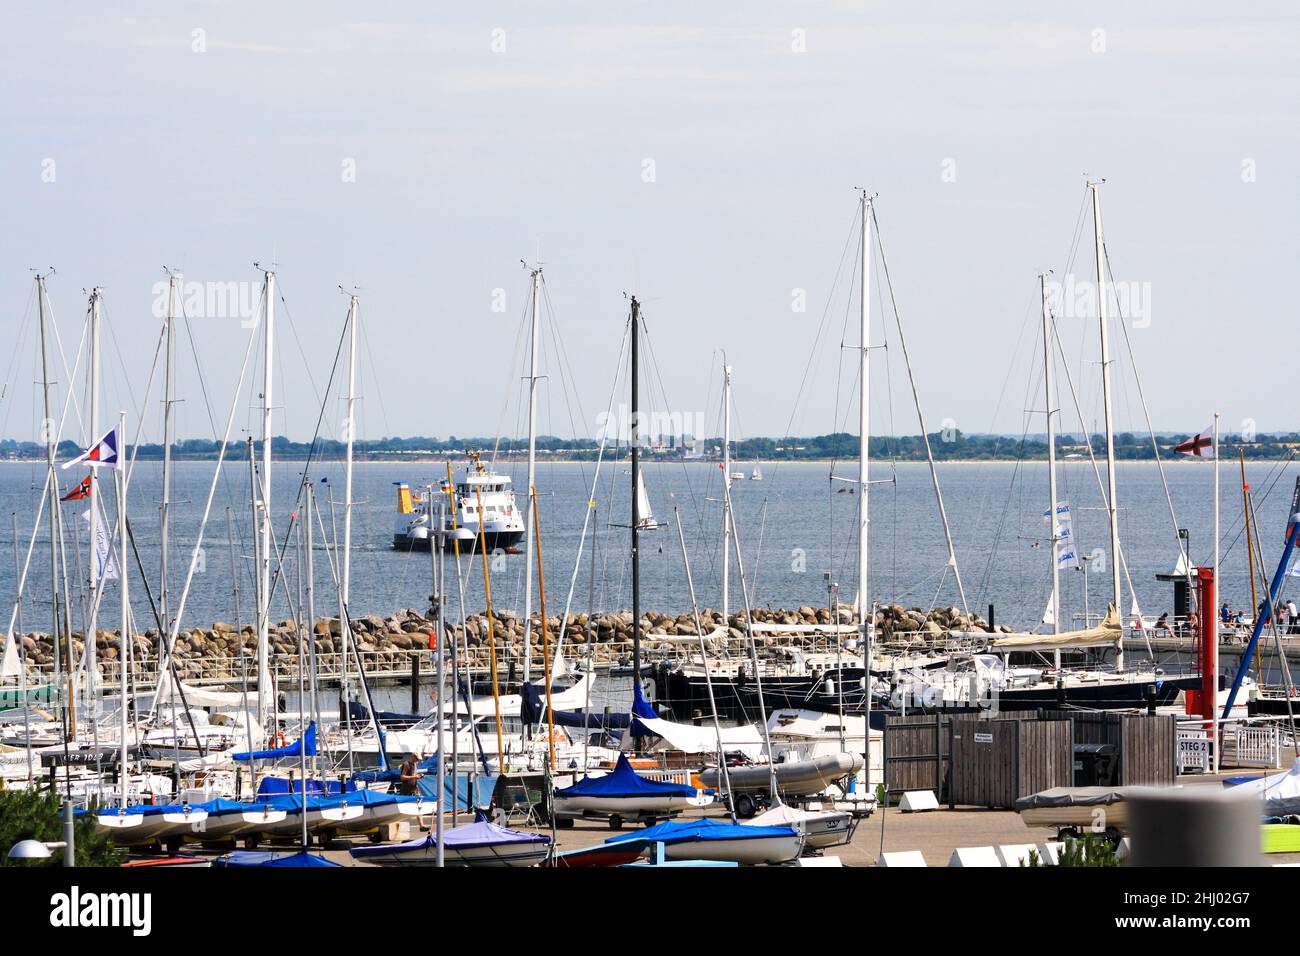 Segelboote dockten an der Pier an, mit einem Schlepper im Hintergrund, der im Sommer vom Segelzentrum der Universität Kiel aus gesehen wurde. Blauer Himmel. Stockfoto